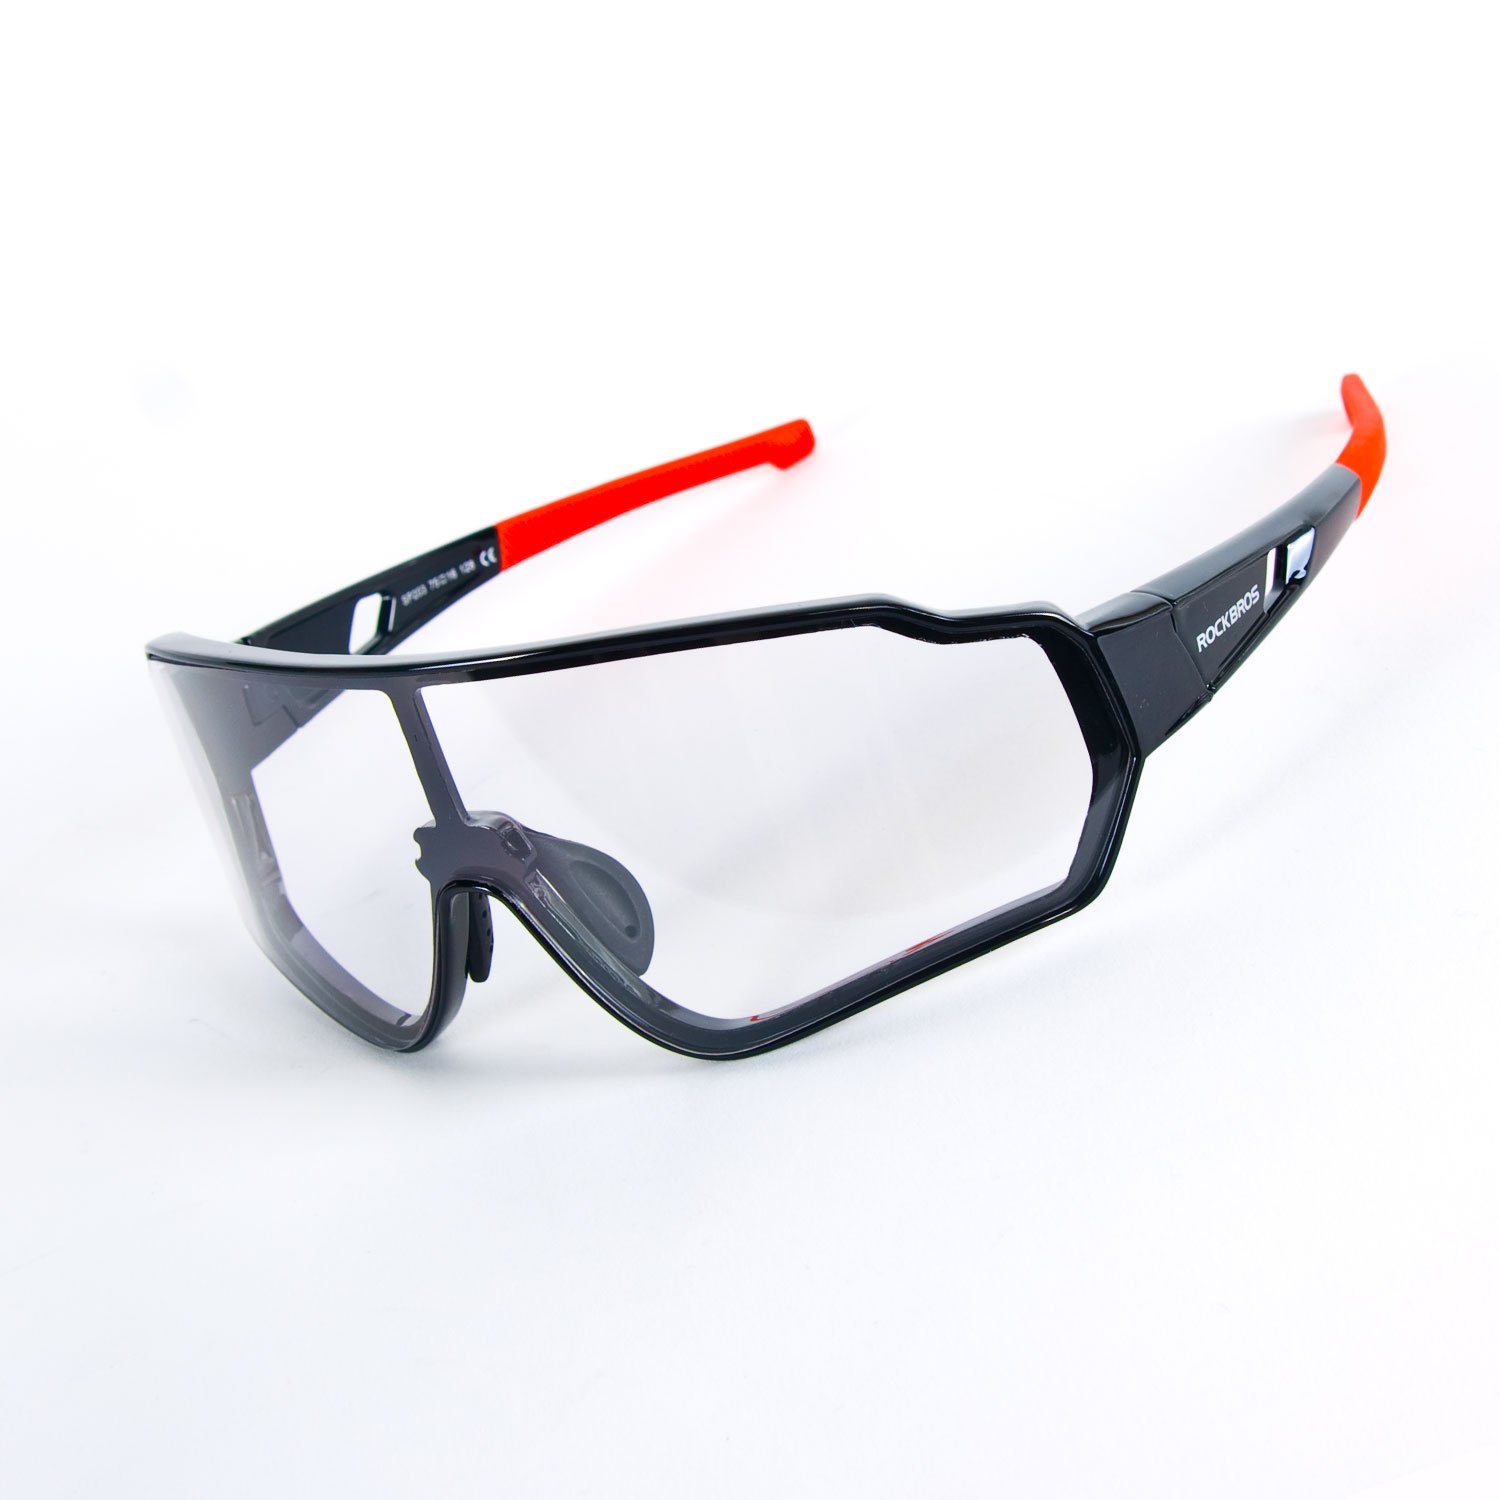 Очки велосипедные Rockbros, поляризационные, оправа черно-красная, 10161 очки велосипедные rockbros 14110006004 линзы меняющие rb 14110006004